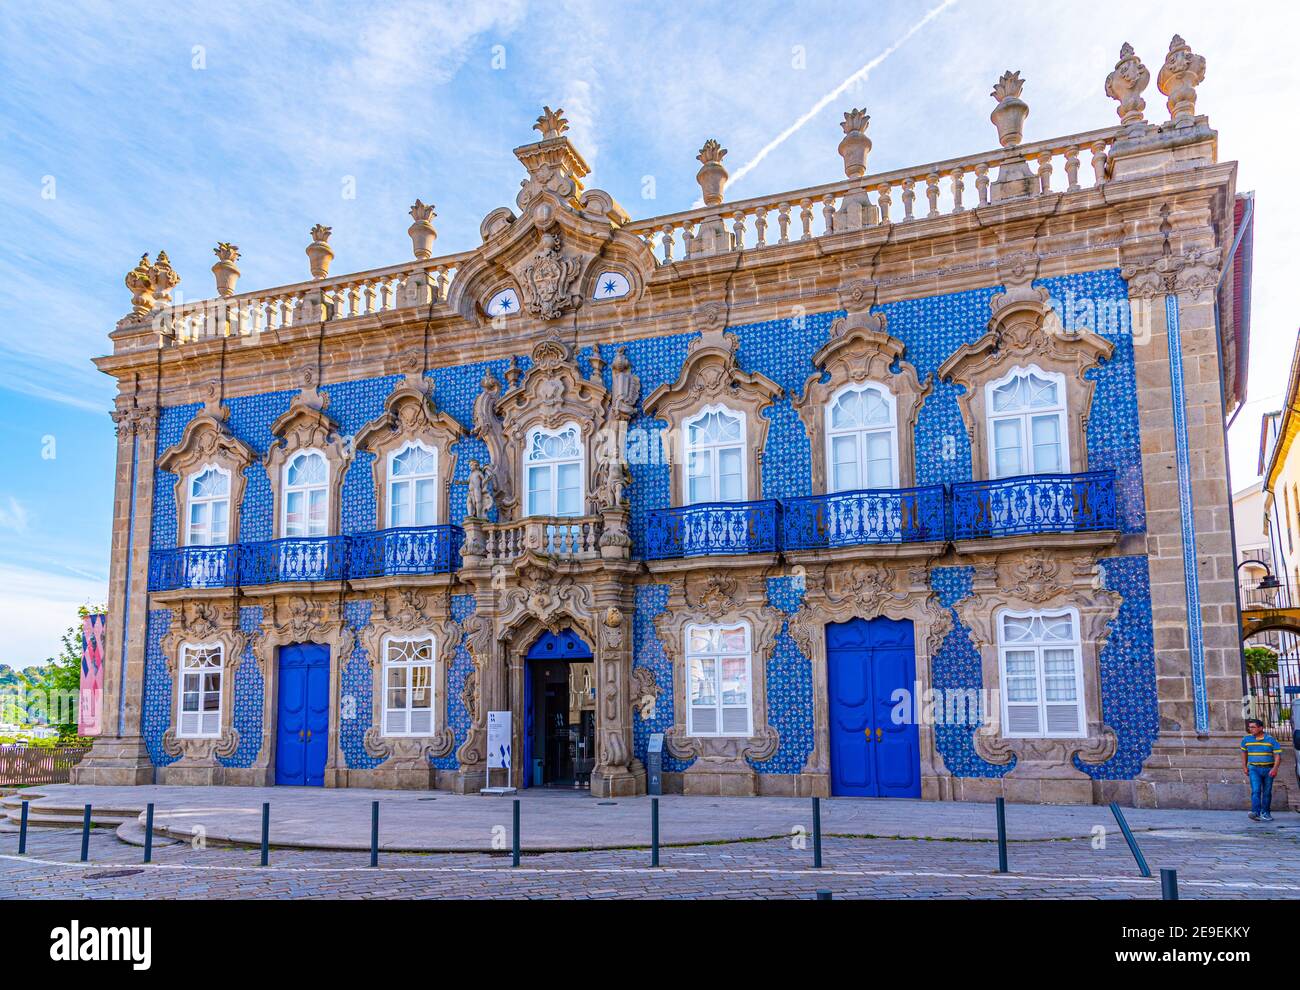 Palacio do Raio in Braga, Portugal Stock Photo